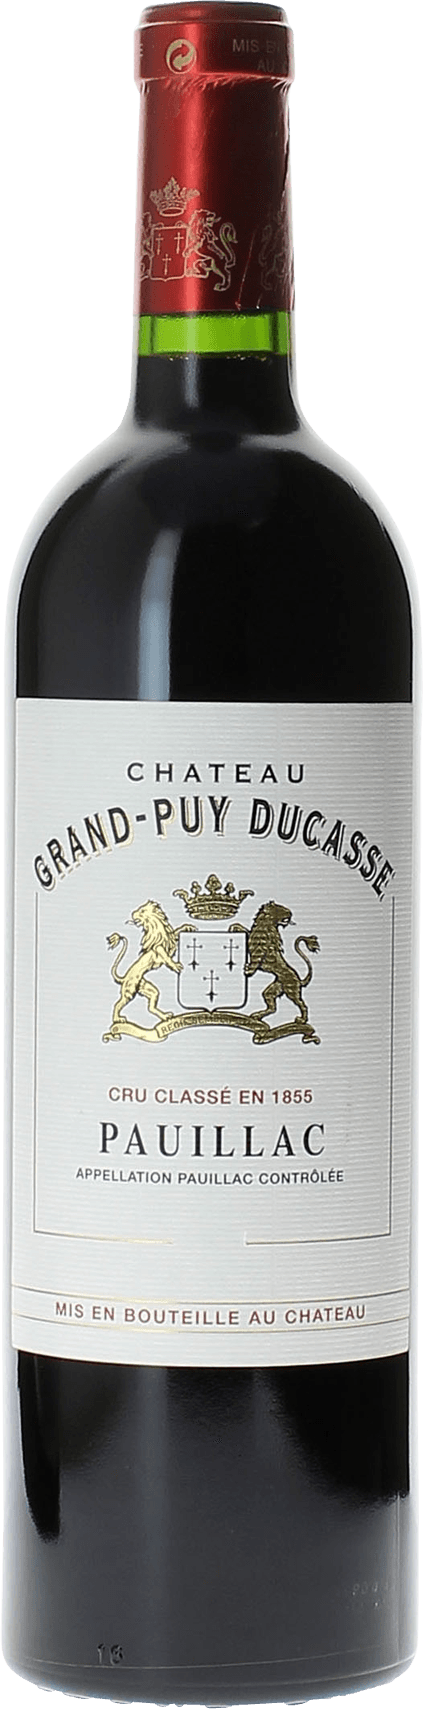 Grand puy ducasse 2016 5 me Grand cru class Pauillac, Bordeaux rouge